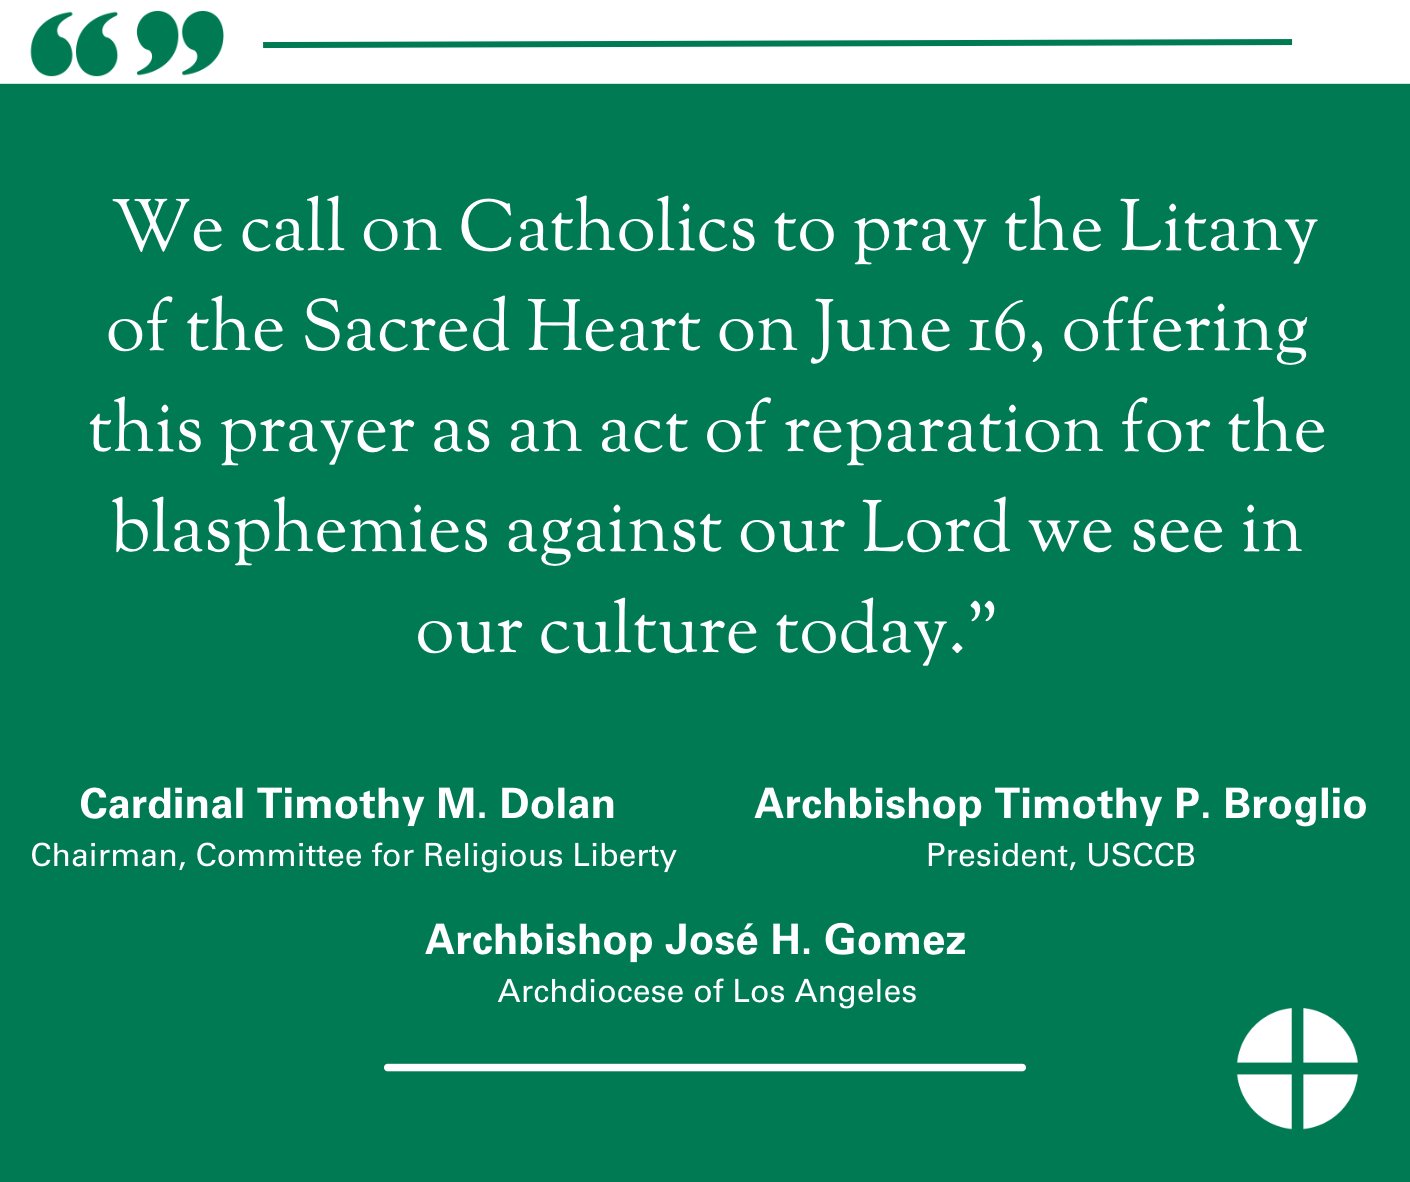 Les évêques américains appellent les fidèles à prier les litanies du Sacré-Coeur